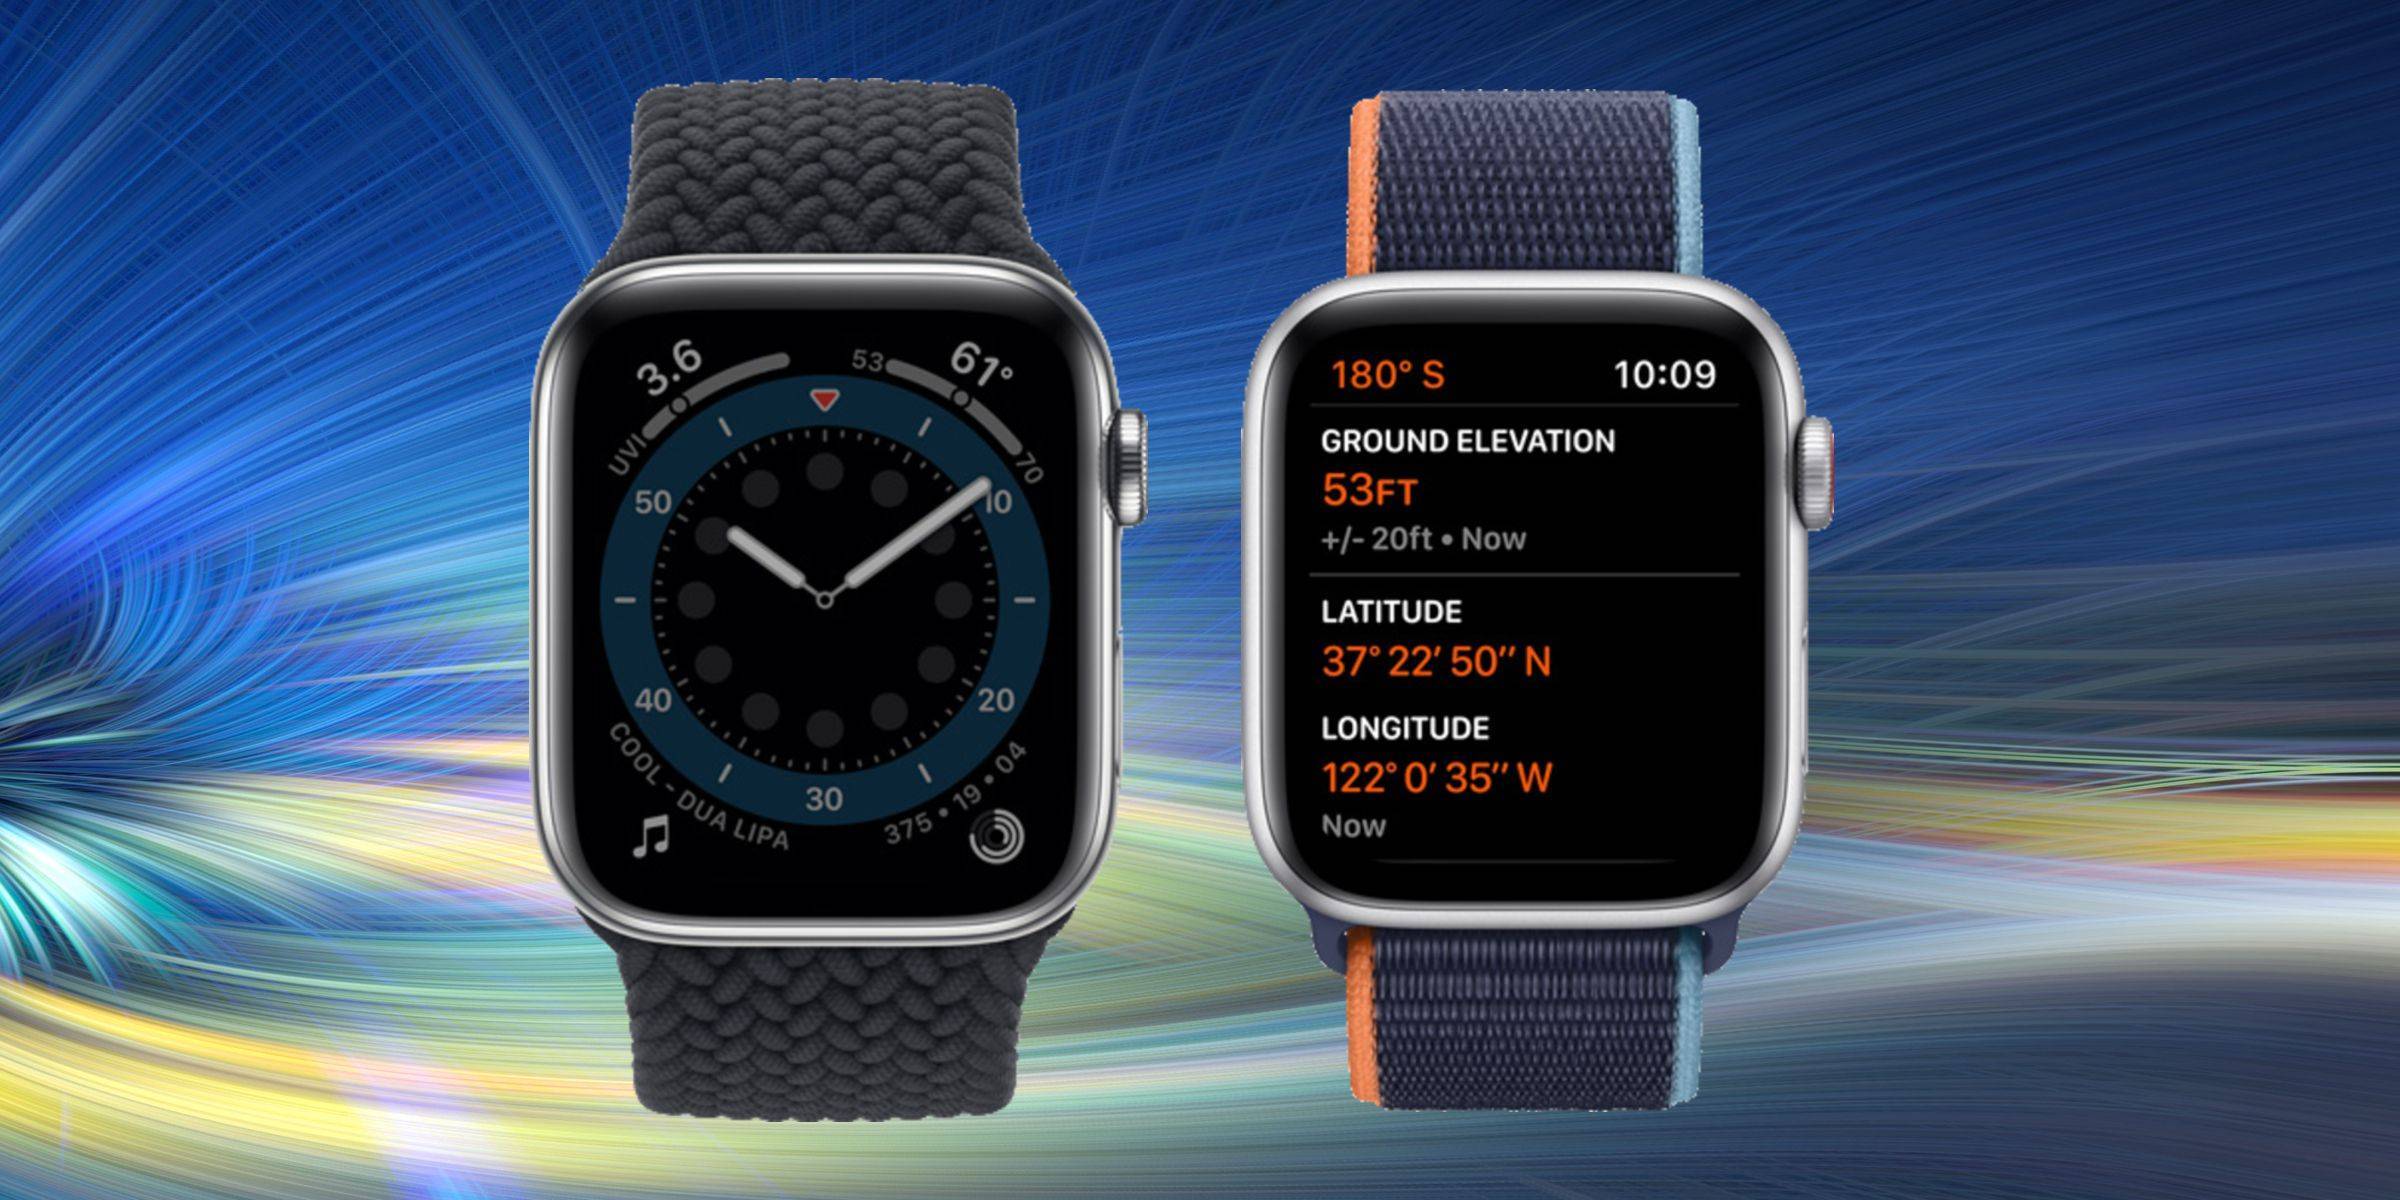 Сравнение apple watch series 1, 2, 3 — в чем разница и что выбрать?